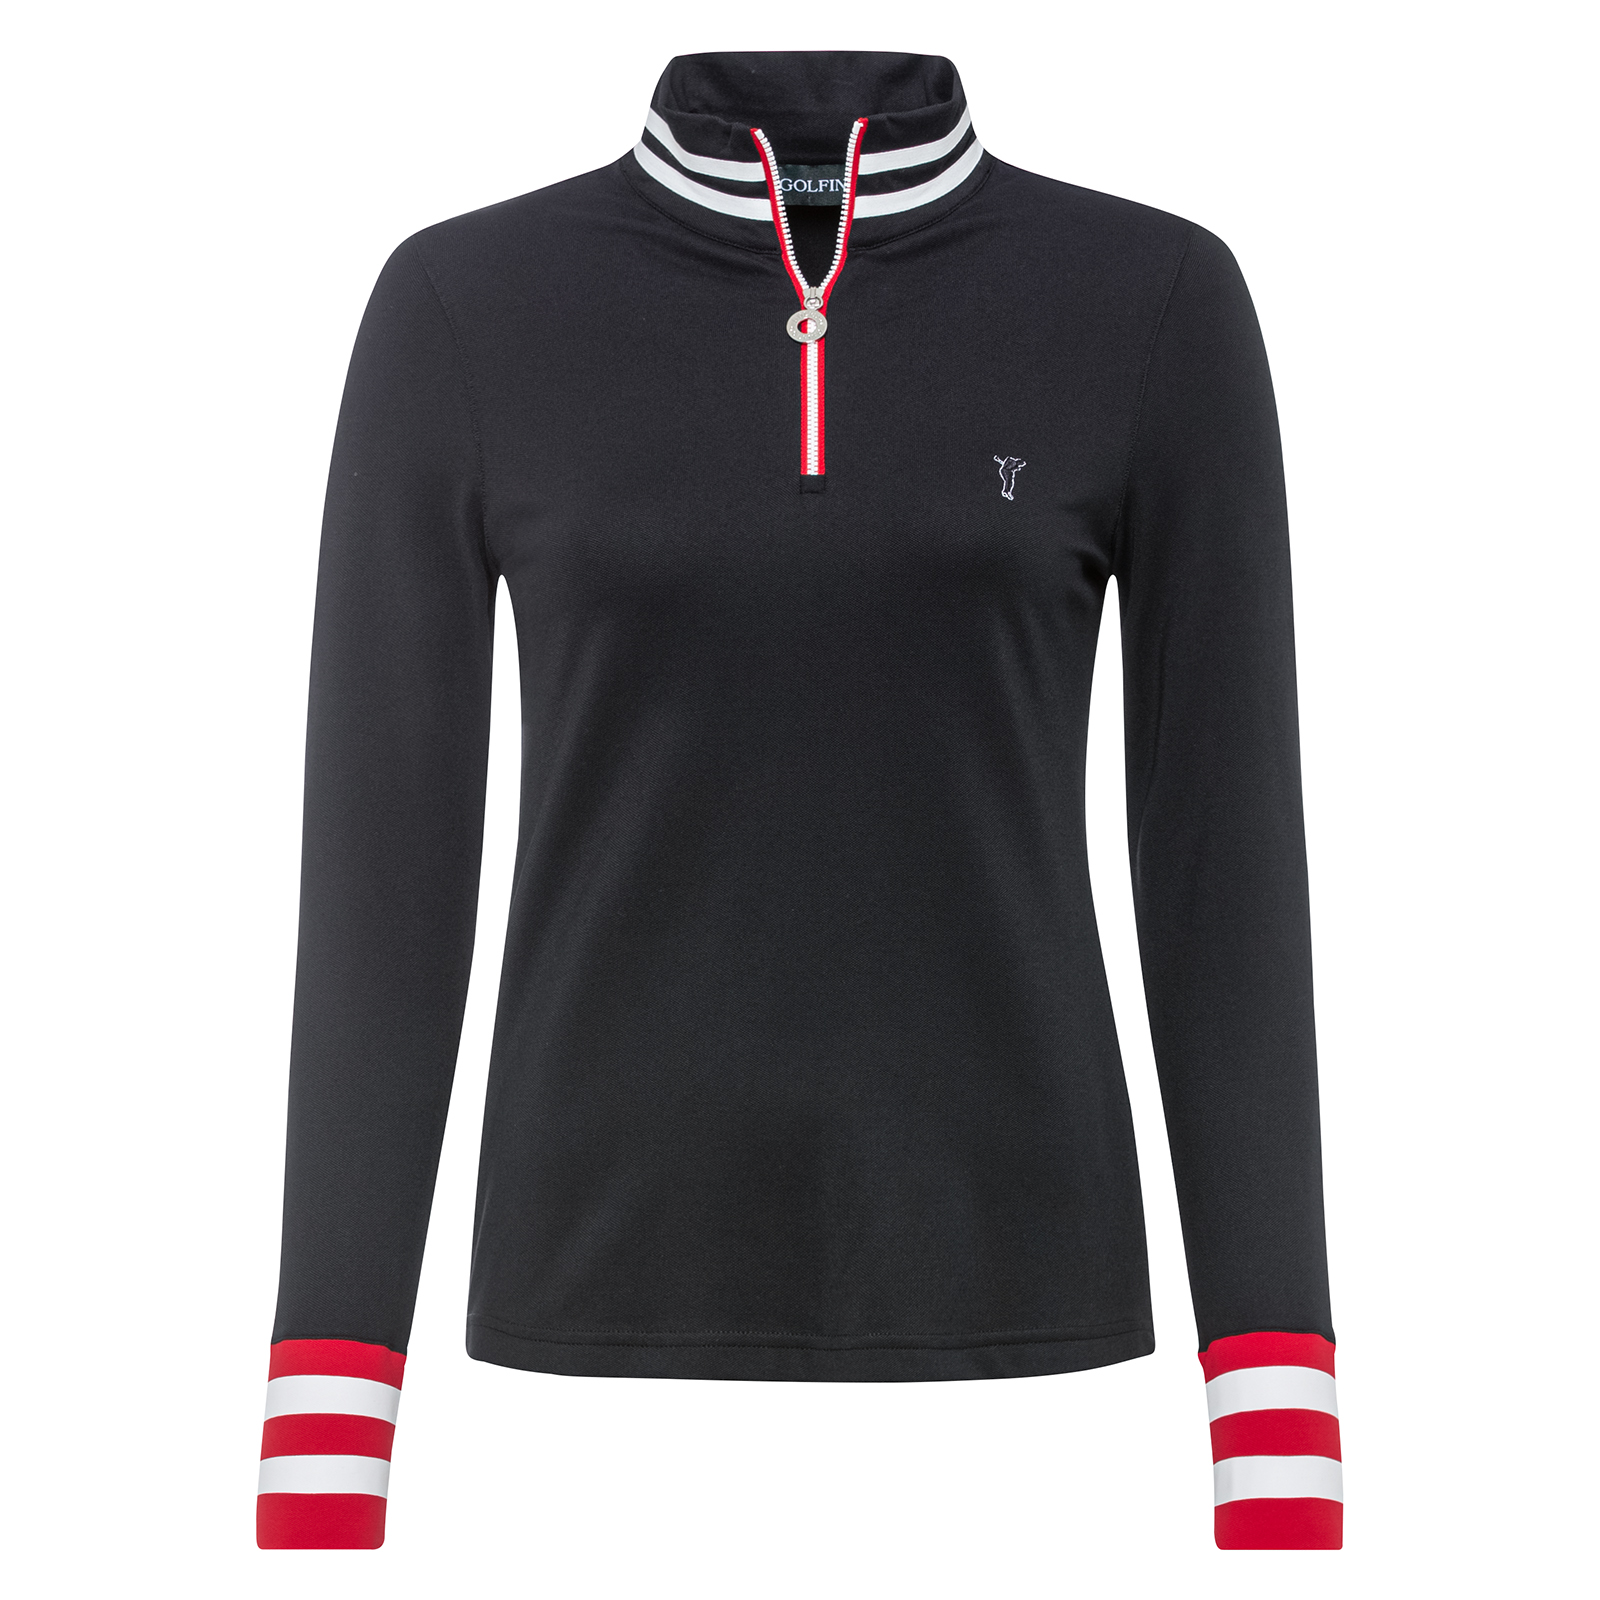 Ladies’ modern half-zip golf sweater with moisture management function